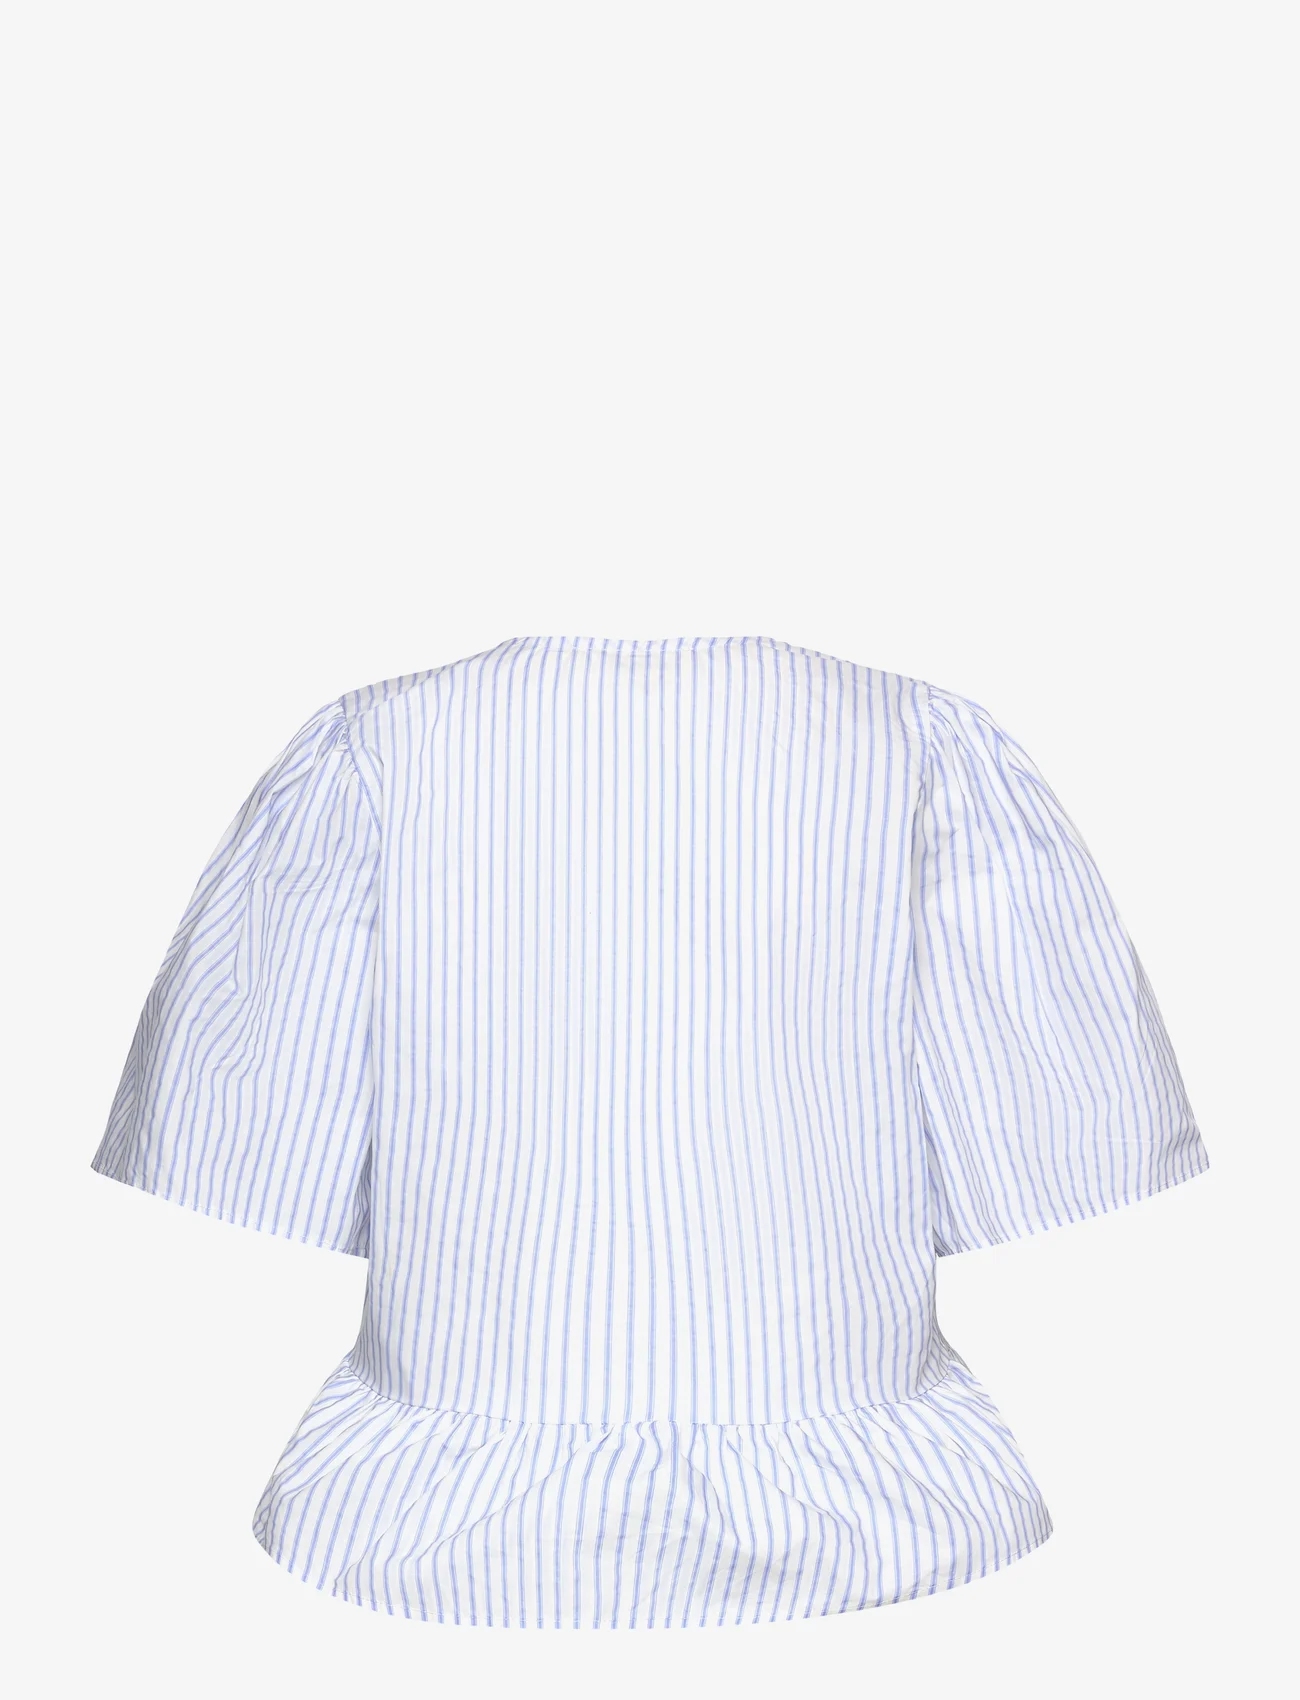 Sofie Schnoor - Shirt - bluzki krotkim rekawem - light blue striped - 1